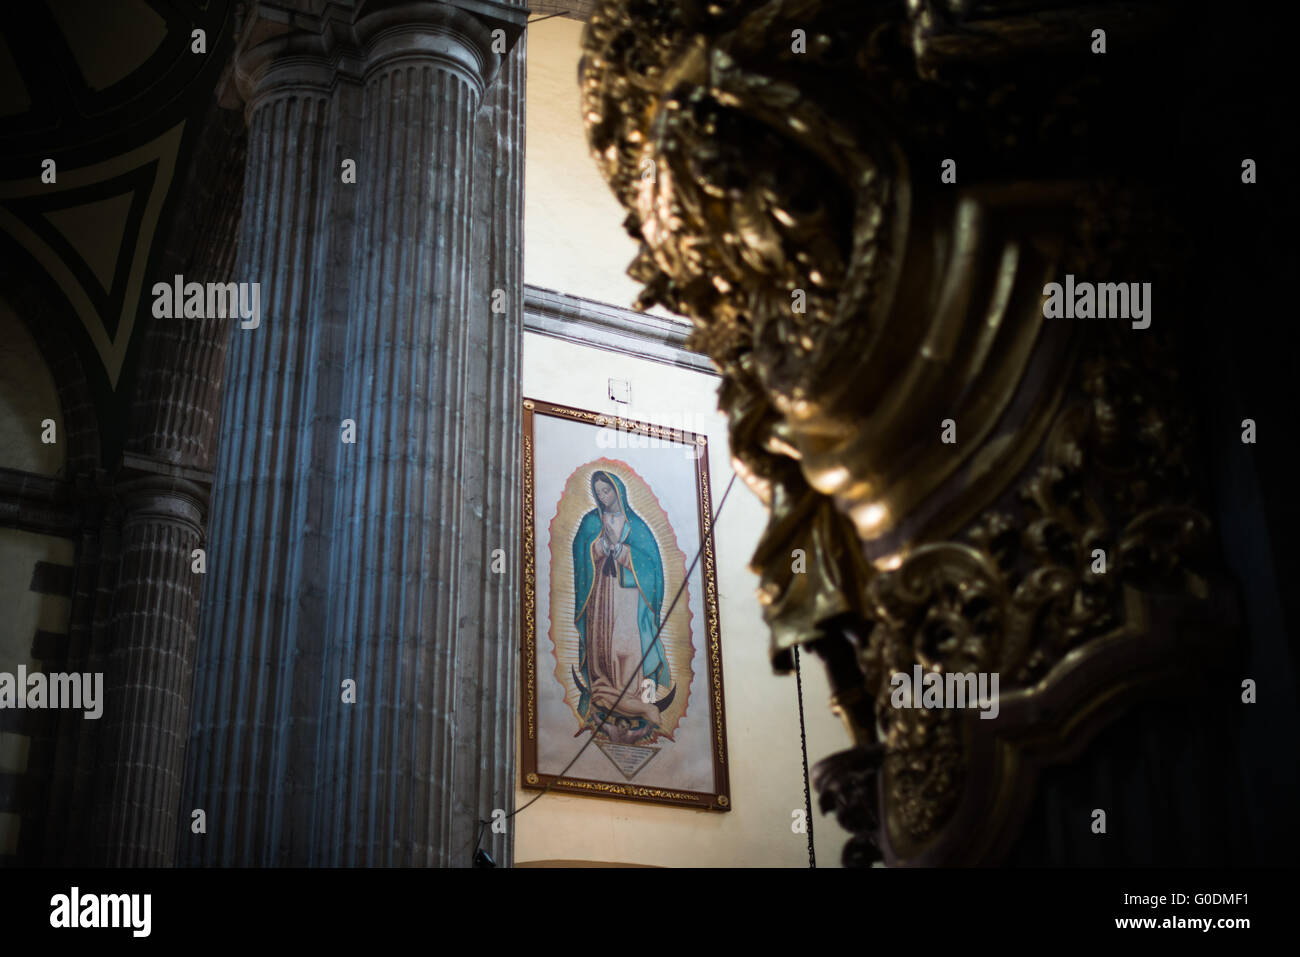 Città del Messico --un dipinto della Madonna di Guadalupe in una cappella nella Cattedrale Metropolitana. Costruito in varie fasi dal 1573 al 1813, la Città del Messico Cattedrale Metropolitana è la più grande cattedrale cattolica romana nelle Americhe. Si trova nel cuore del quartiere storico di Città del Messico lungo un lato dello Zocalo. Foto Stock